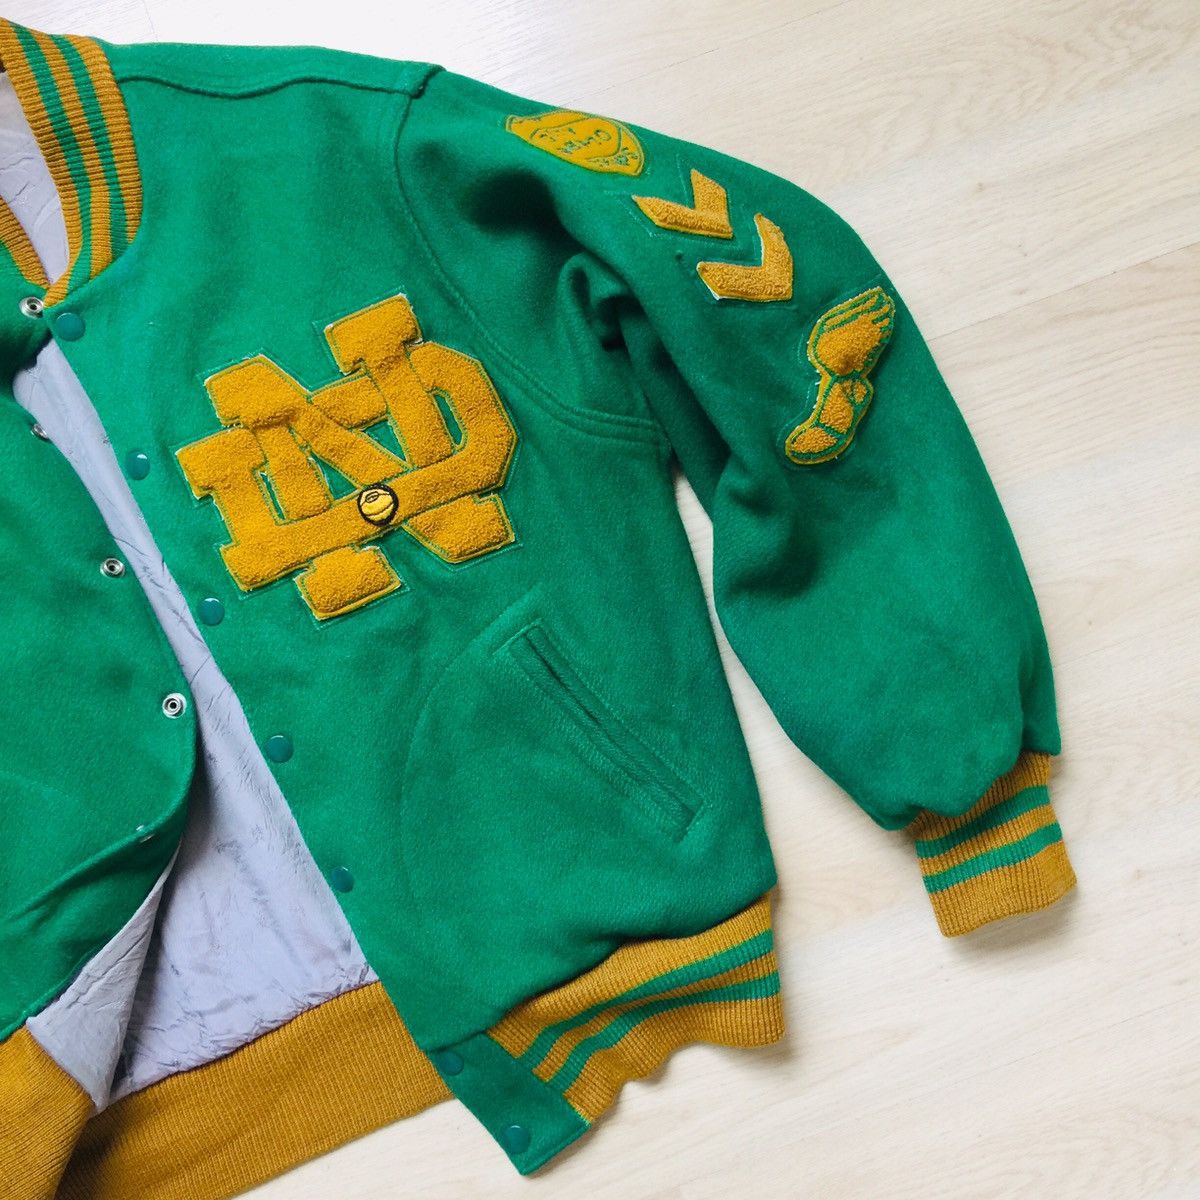 Vintage Vintage Notre Dame Letterman Jacket Varsity Wool Patches Size US M / EU 48-50 / 2 - 4 Thumbnail